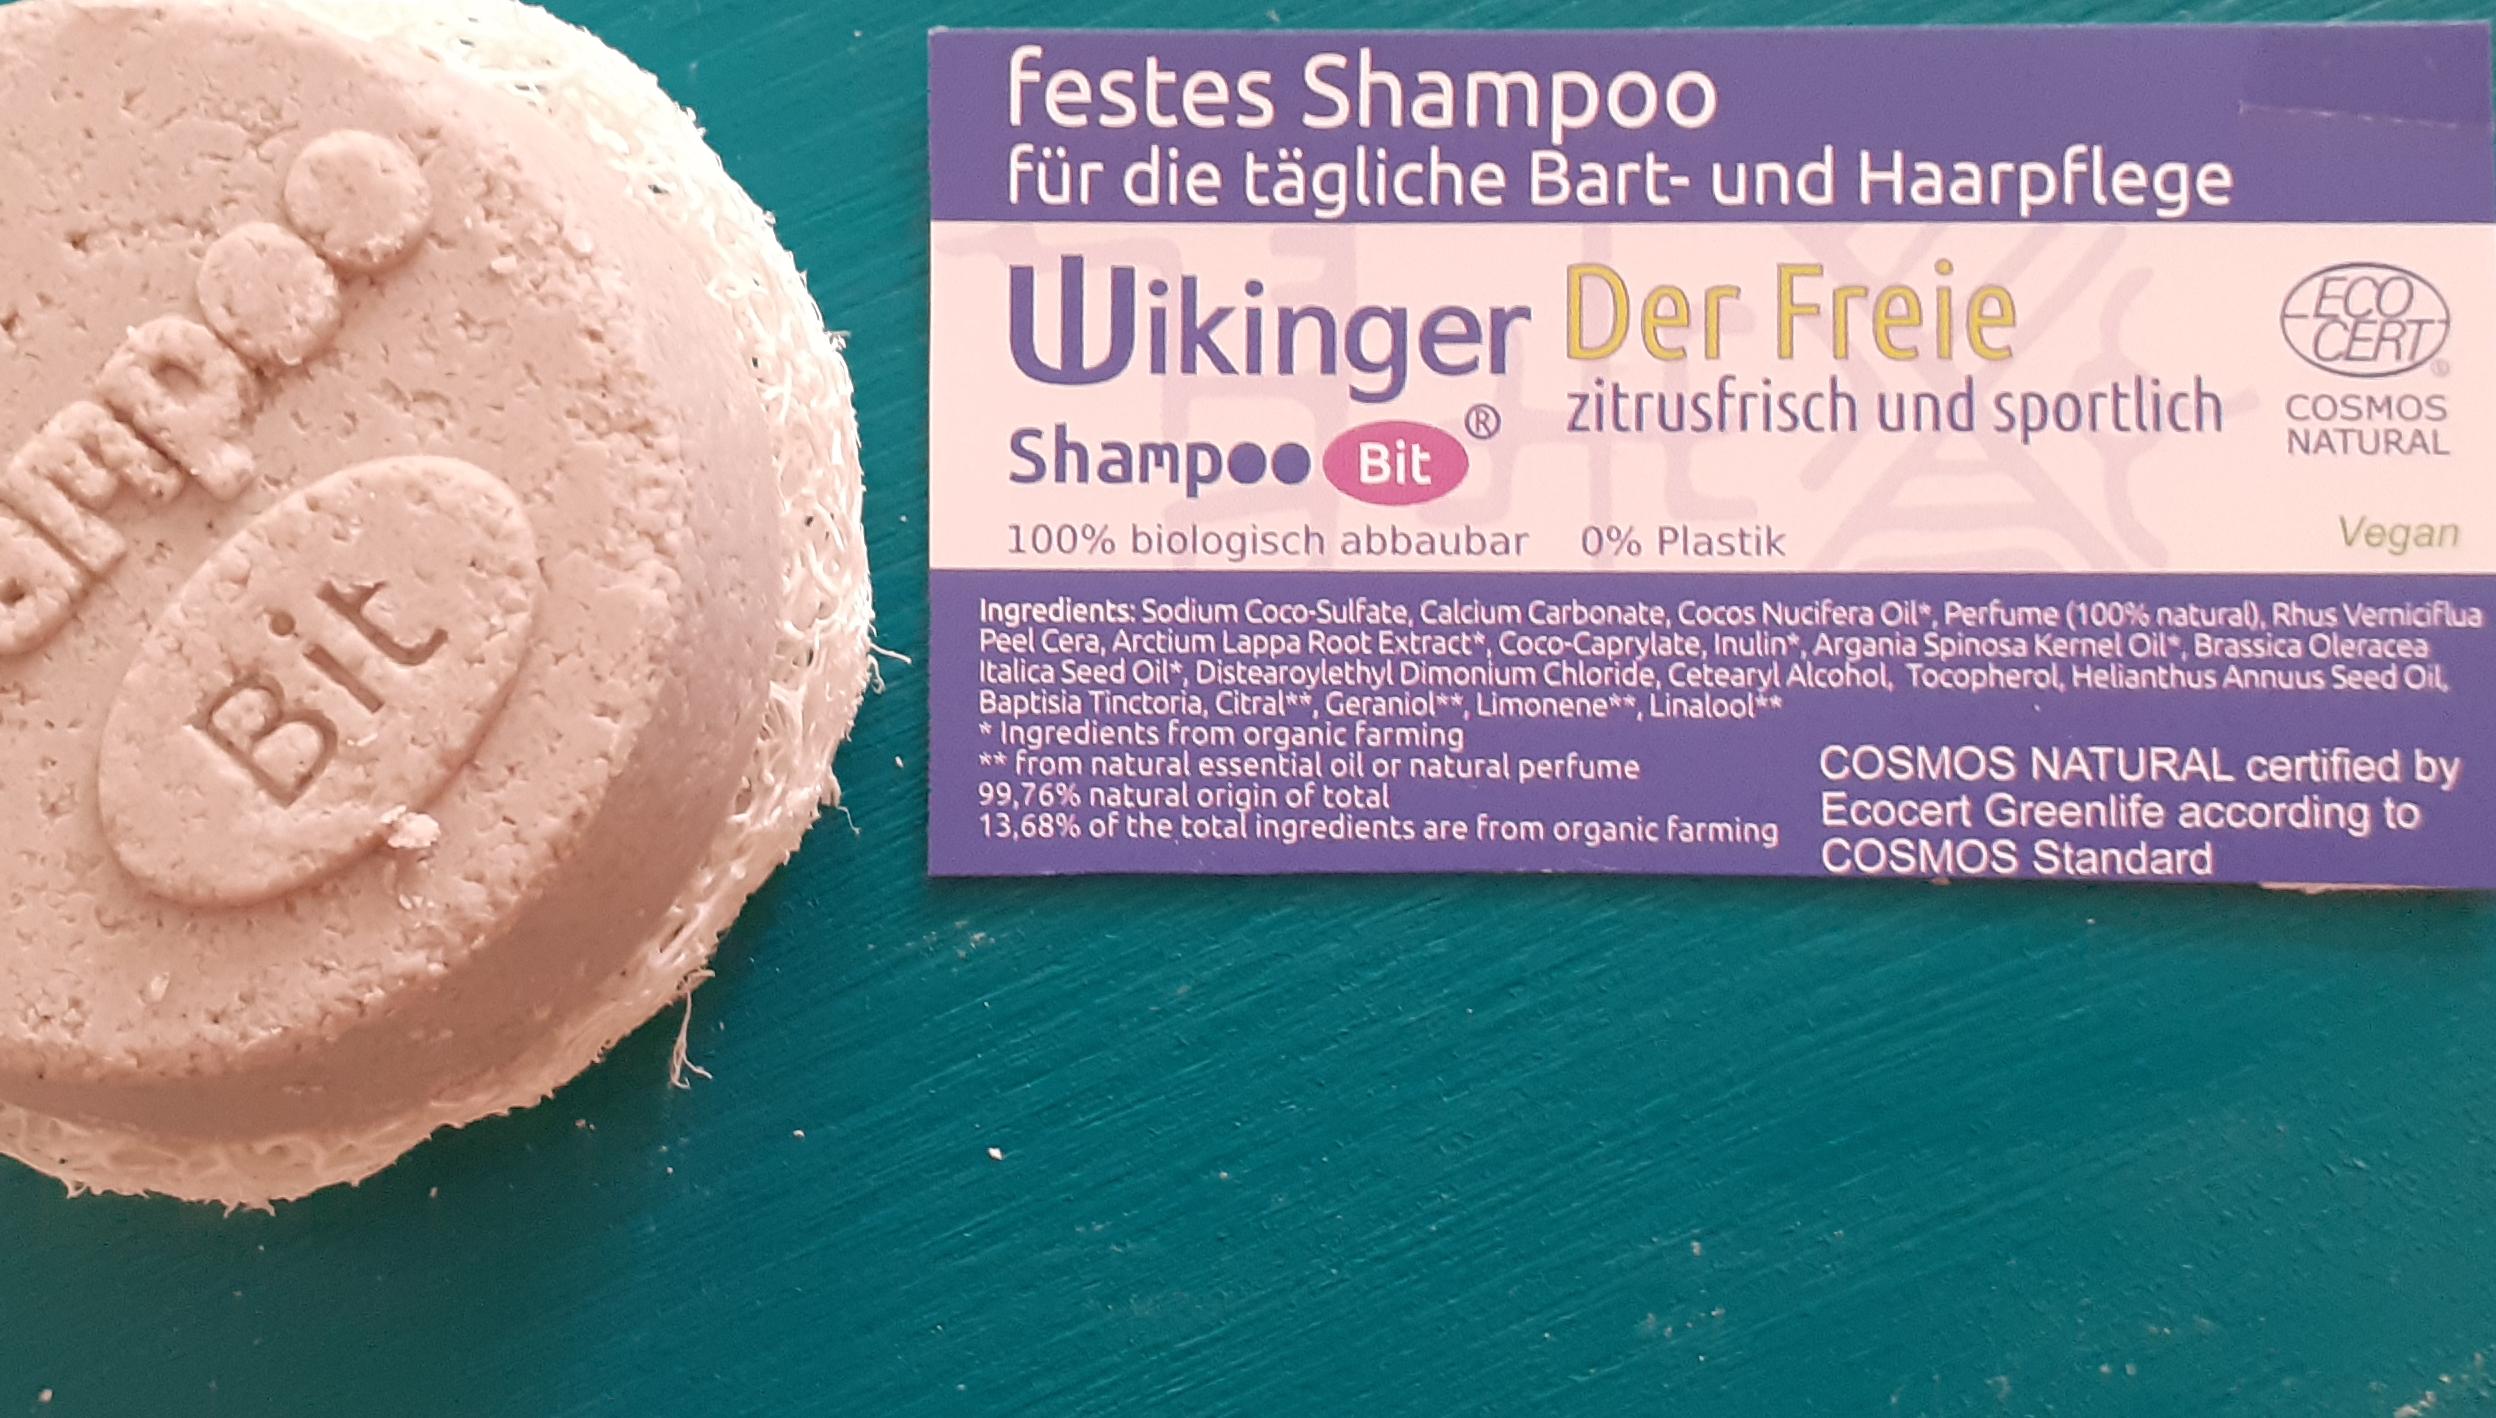 Wikinger Shampoo Bit von Rosenrot für die tägliche Bart- und Haarpflege, Der Freie